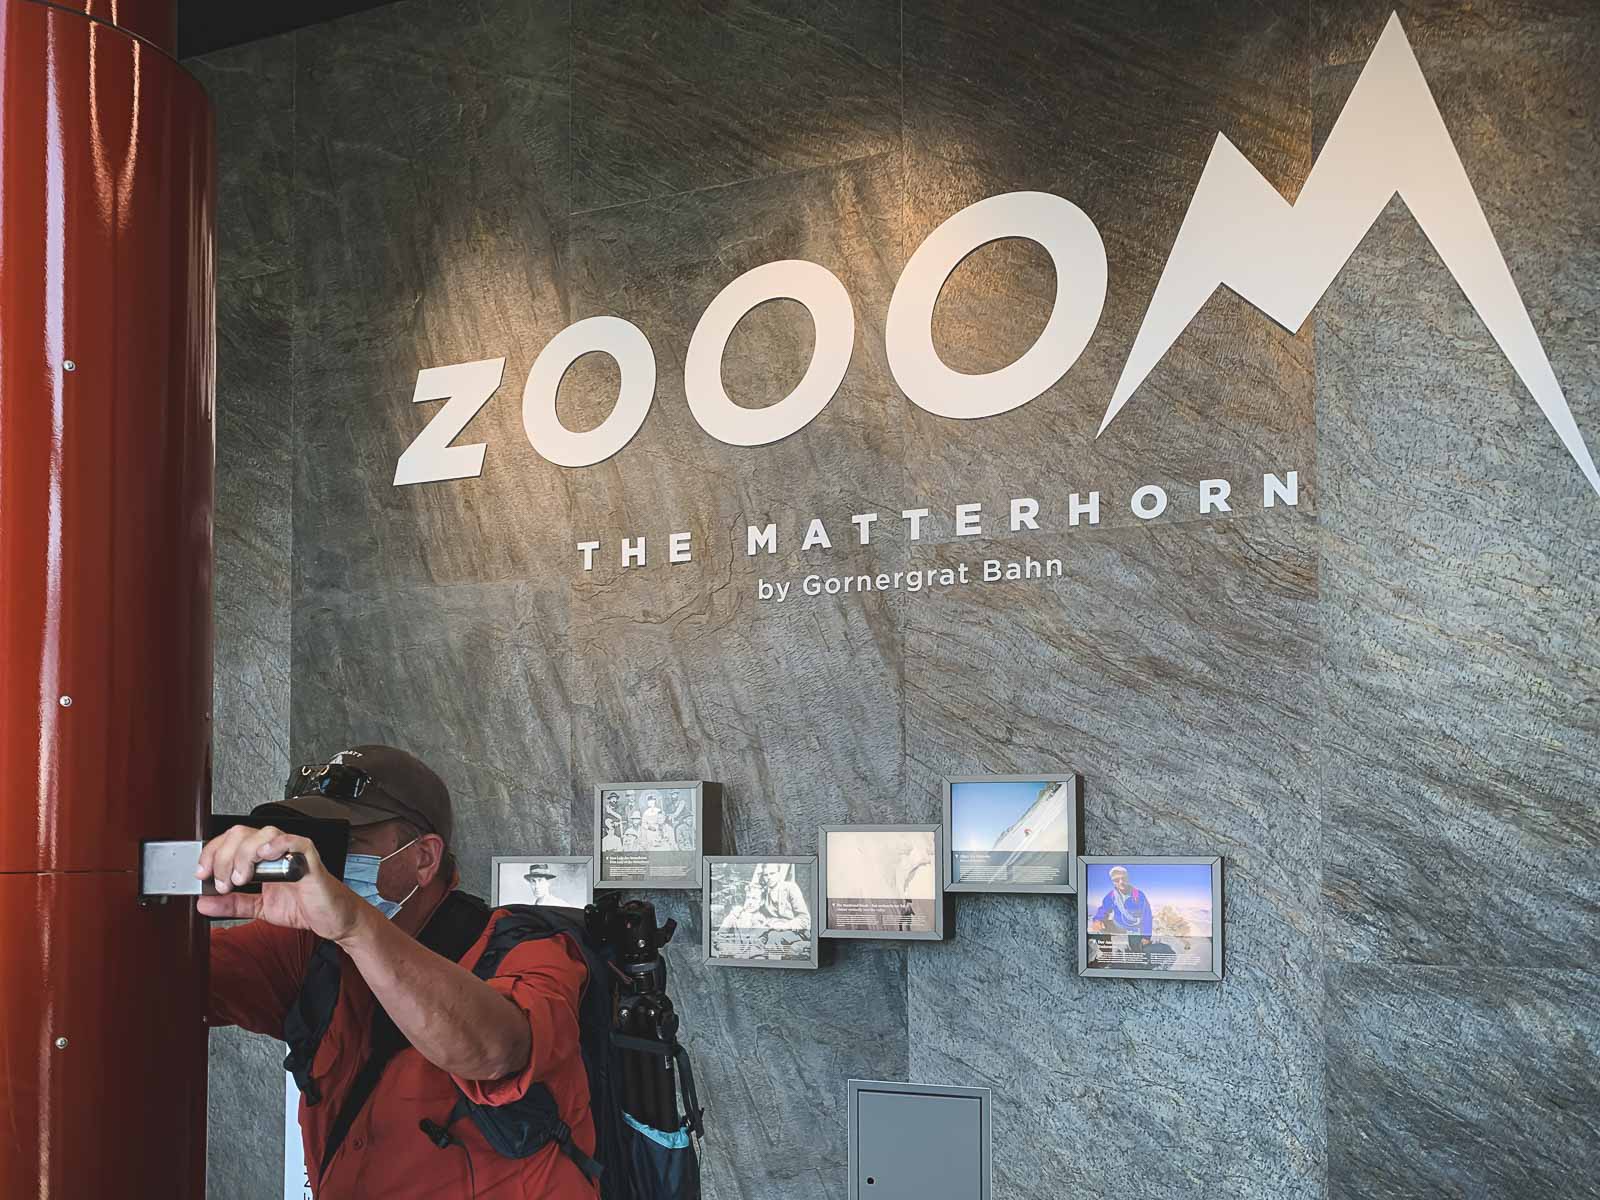 Zooom at Gornergrat in Zermatt Switzerland